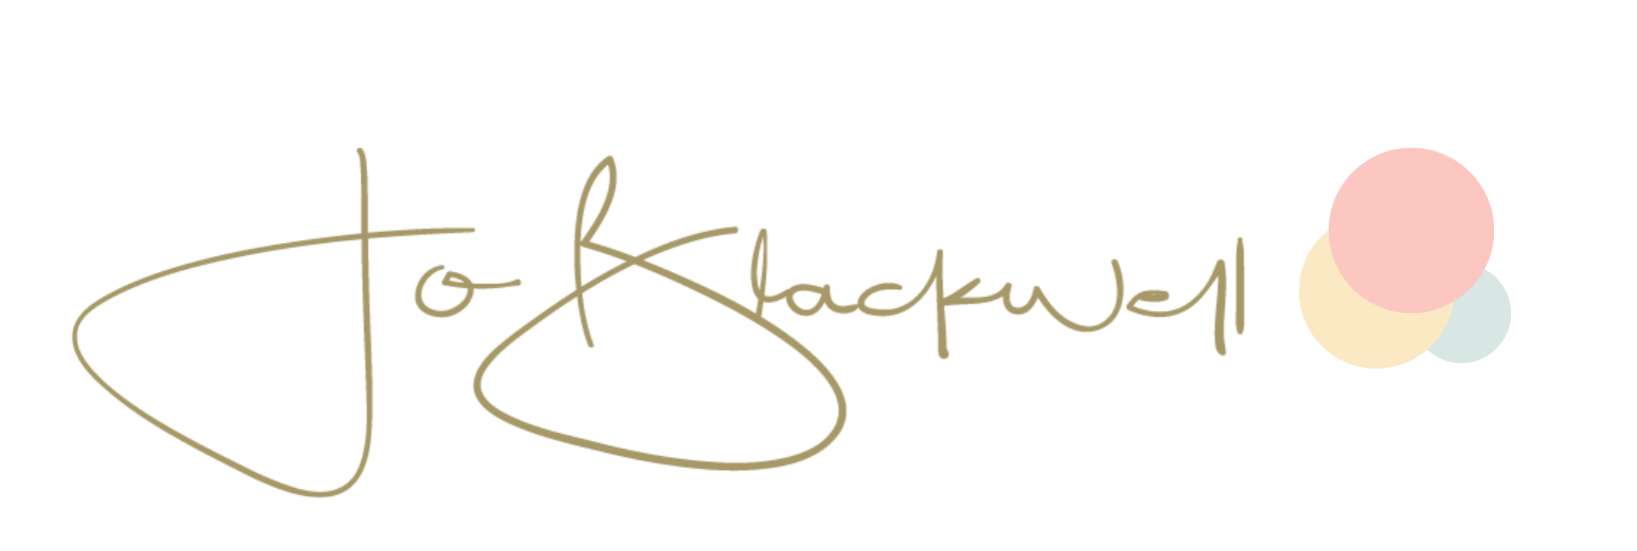 Jo Blackwell Author signature